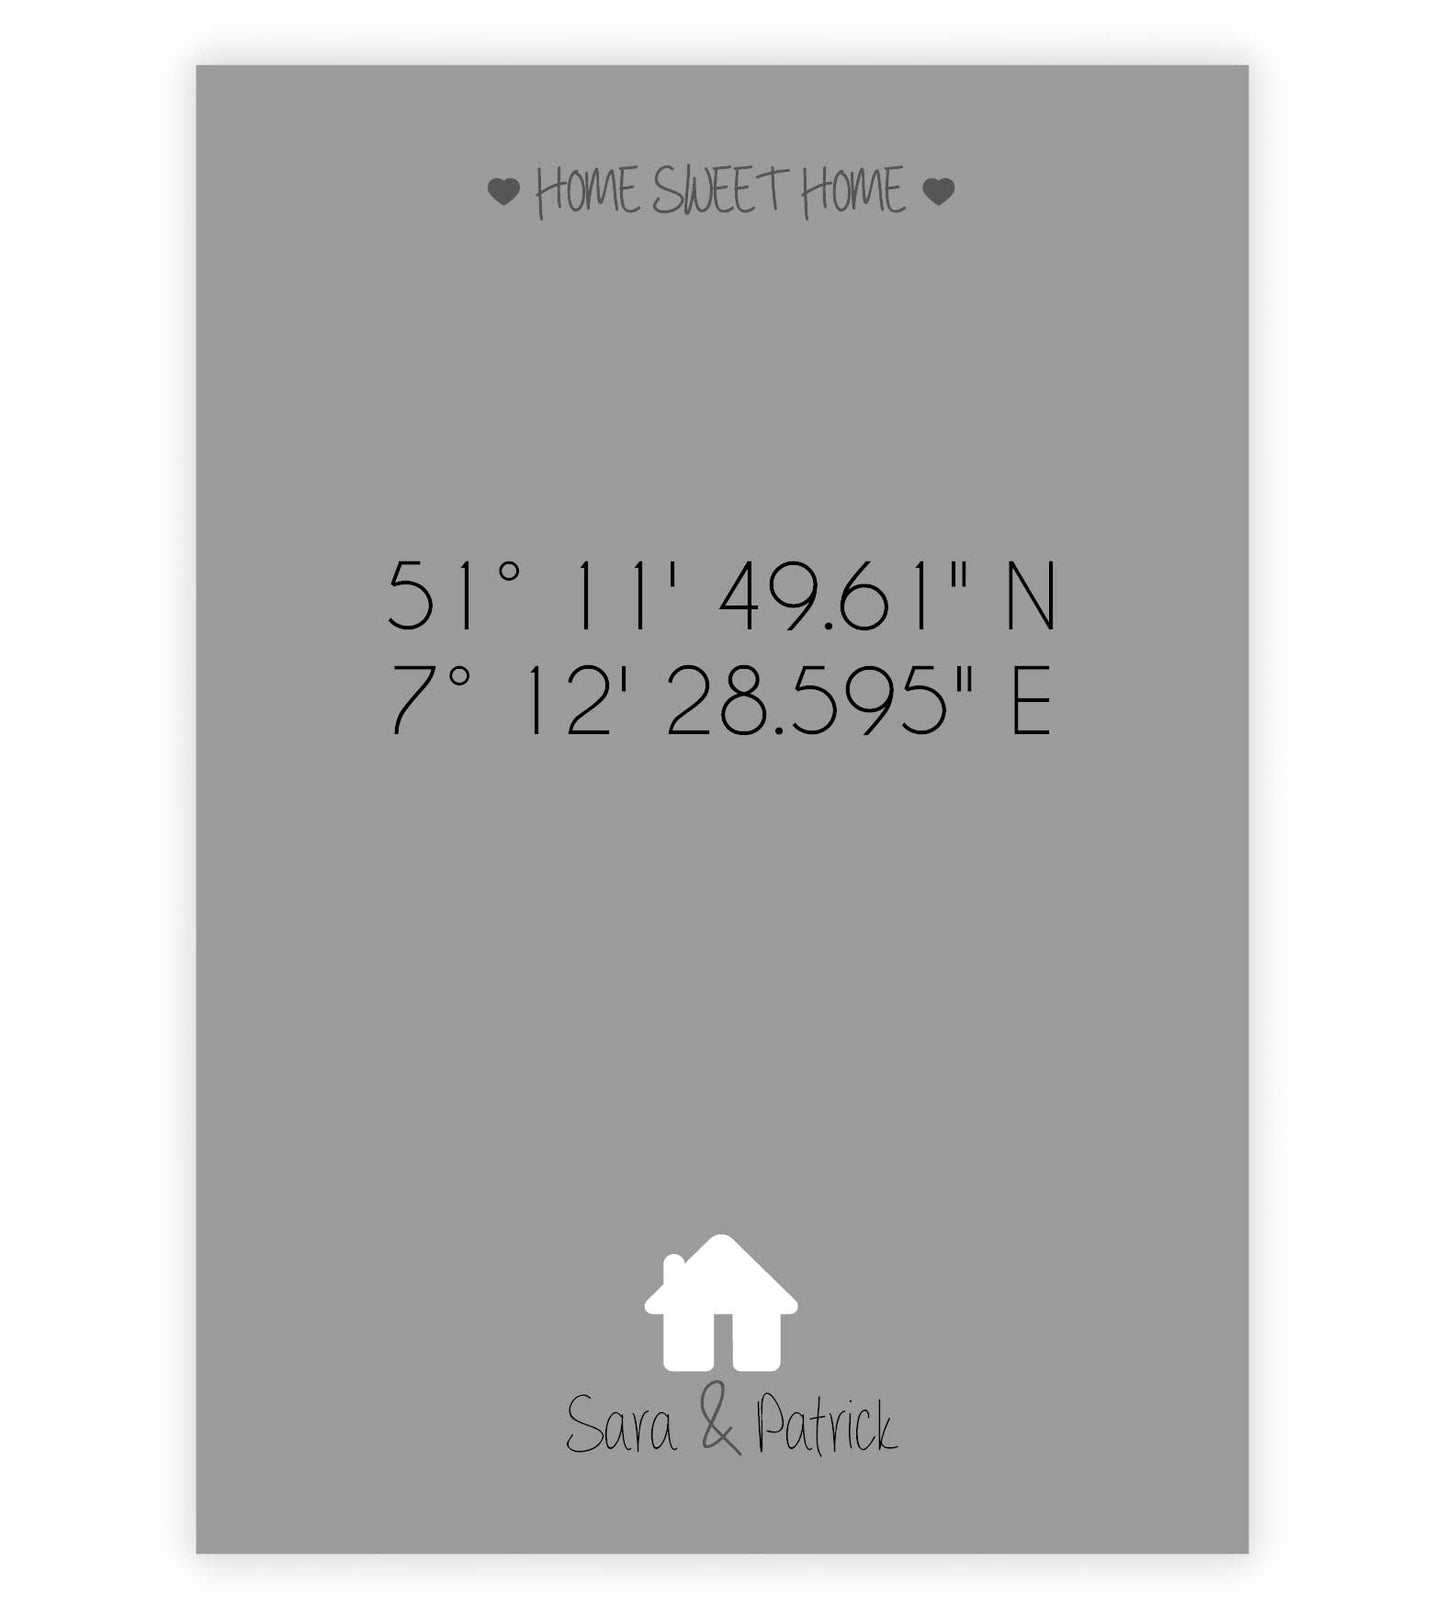 Personalisiertes Poster "HOME SWEET HOME" - Haus, Bildfarbe: Grau, Bildgröße: 13x18cm, DIN A4, DIN A3, Bilderrahmen: Ohne Bilderrahmen, Copyright: 321geschenke.de